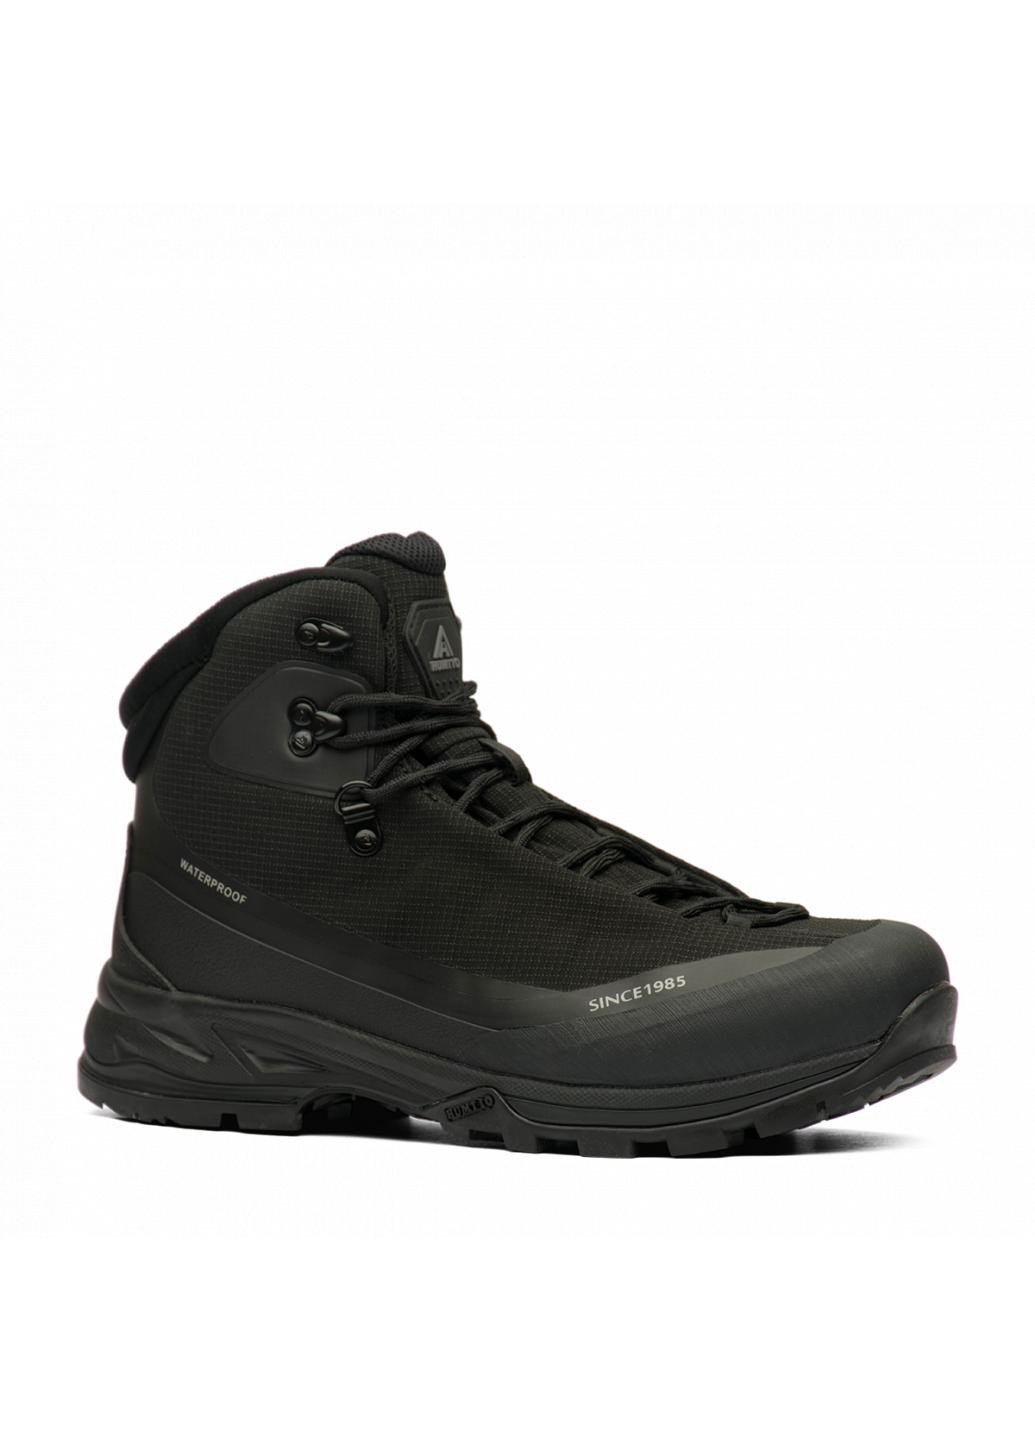 Черные зимние ботинки мужские 230189c1 Humtto